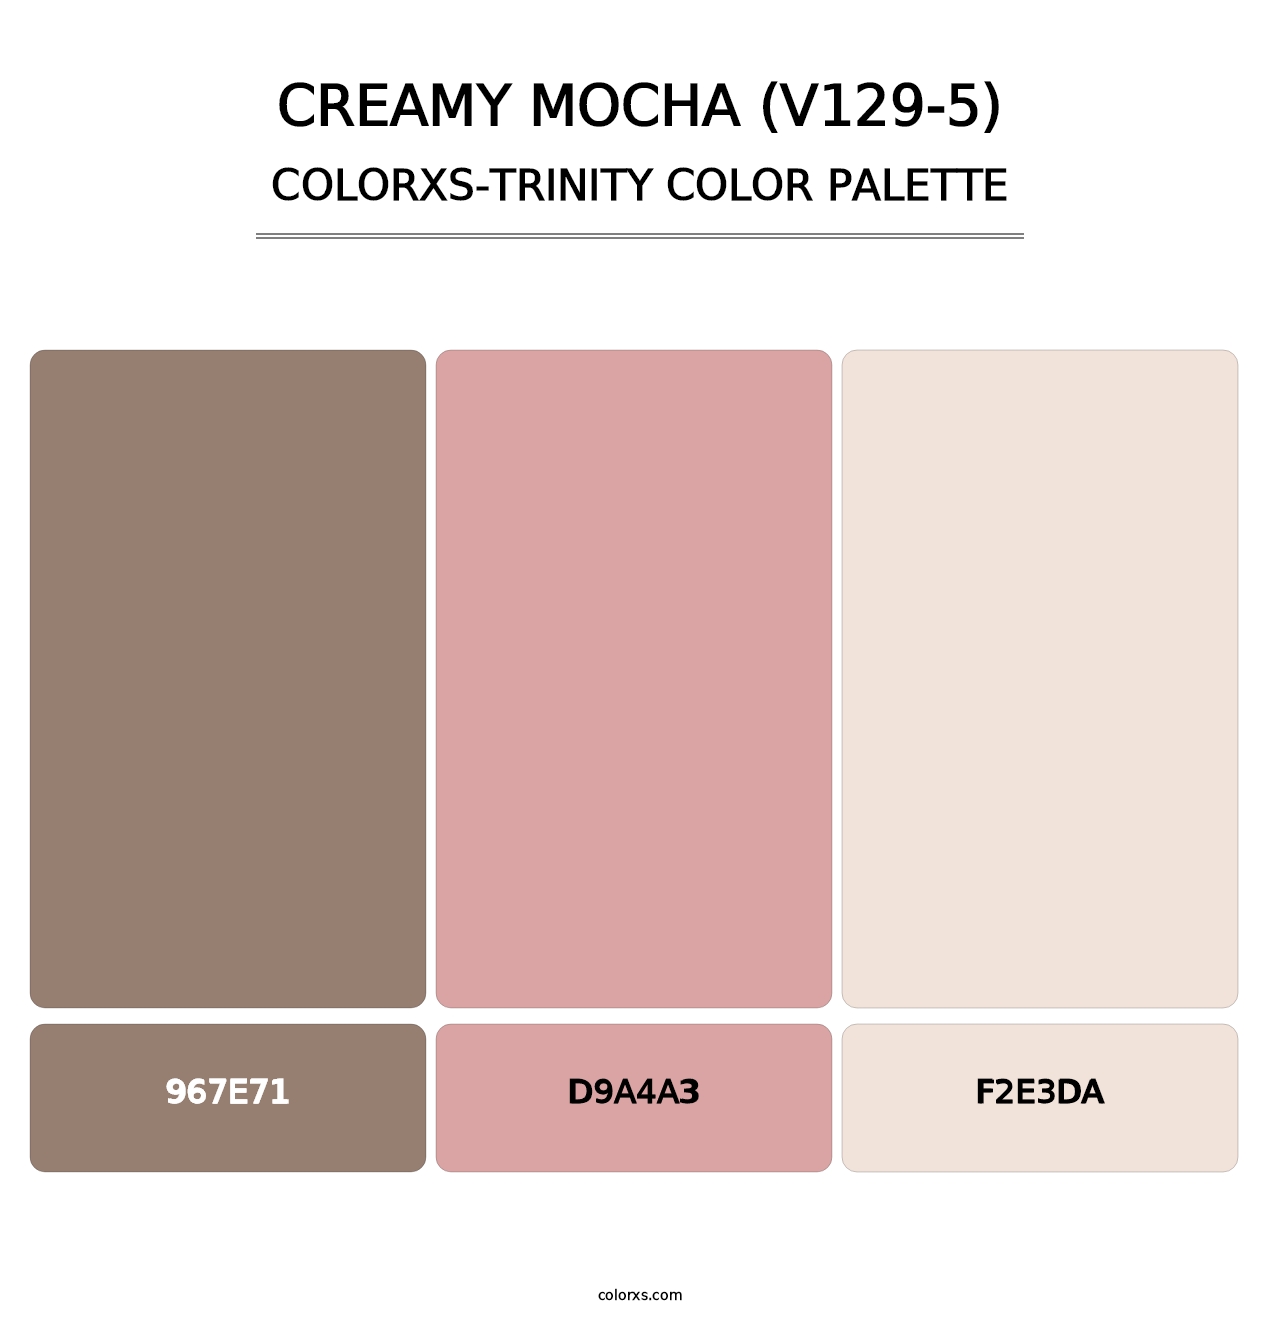 Creamy Mocha (V129-5) - Colorxs Trinity Palette